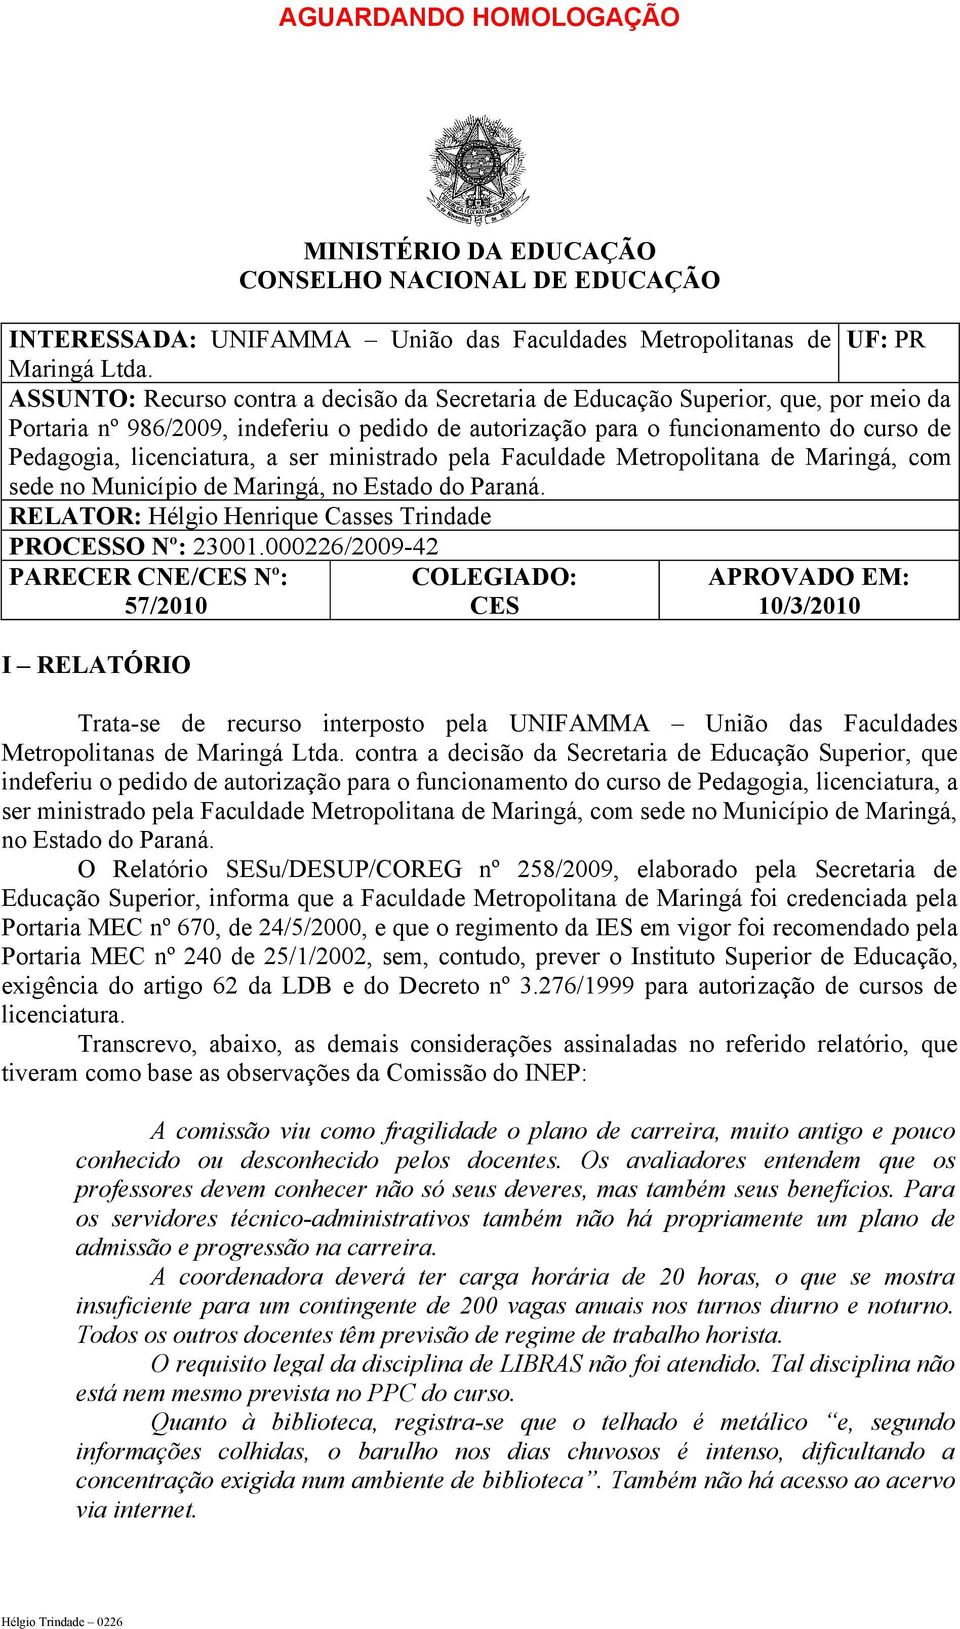 licenciatura, a ser ministrado pela Faculdade Metropolitana de Maringá, com sede no Município de Maringá, no Estado do Paraná. RELATOR: Hélgio Henrique Casses Trindade PROCESSO Nº: 23001.